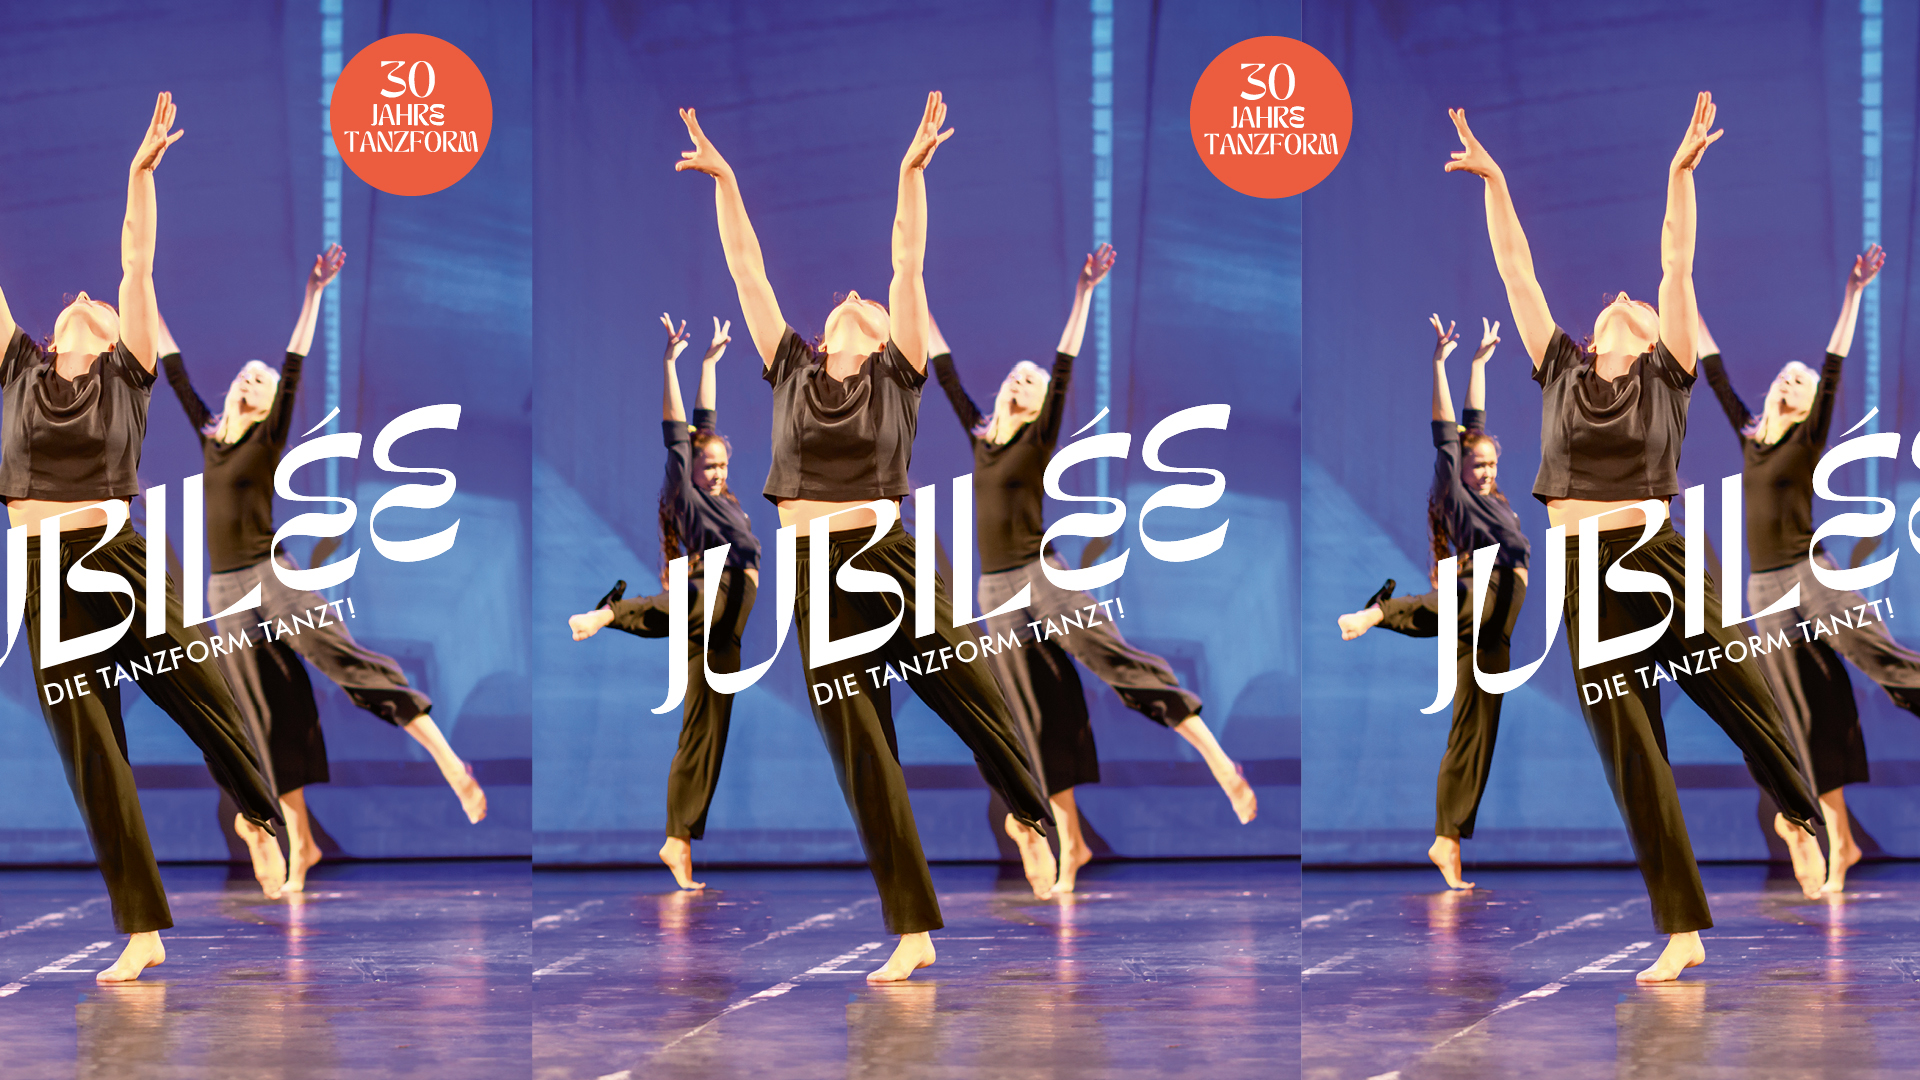 Jubilée – die tanzform tanzt!
22.6., 16+19 Uhr, Dreispitz Kreuzlingen
VVK: Buchladen «Zur Schwarzen Geiß»